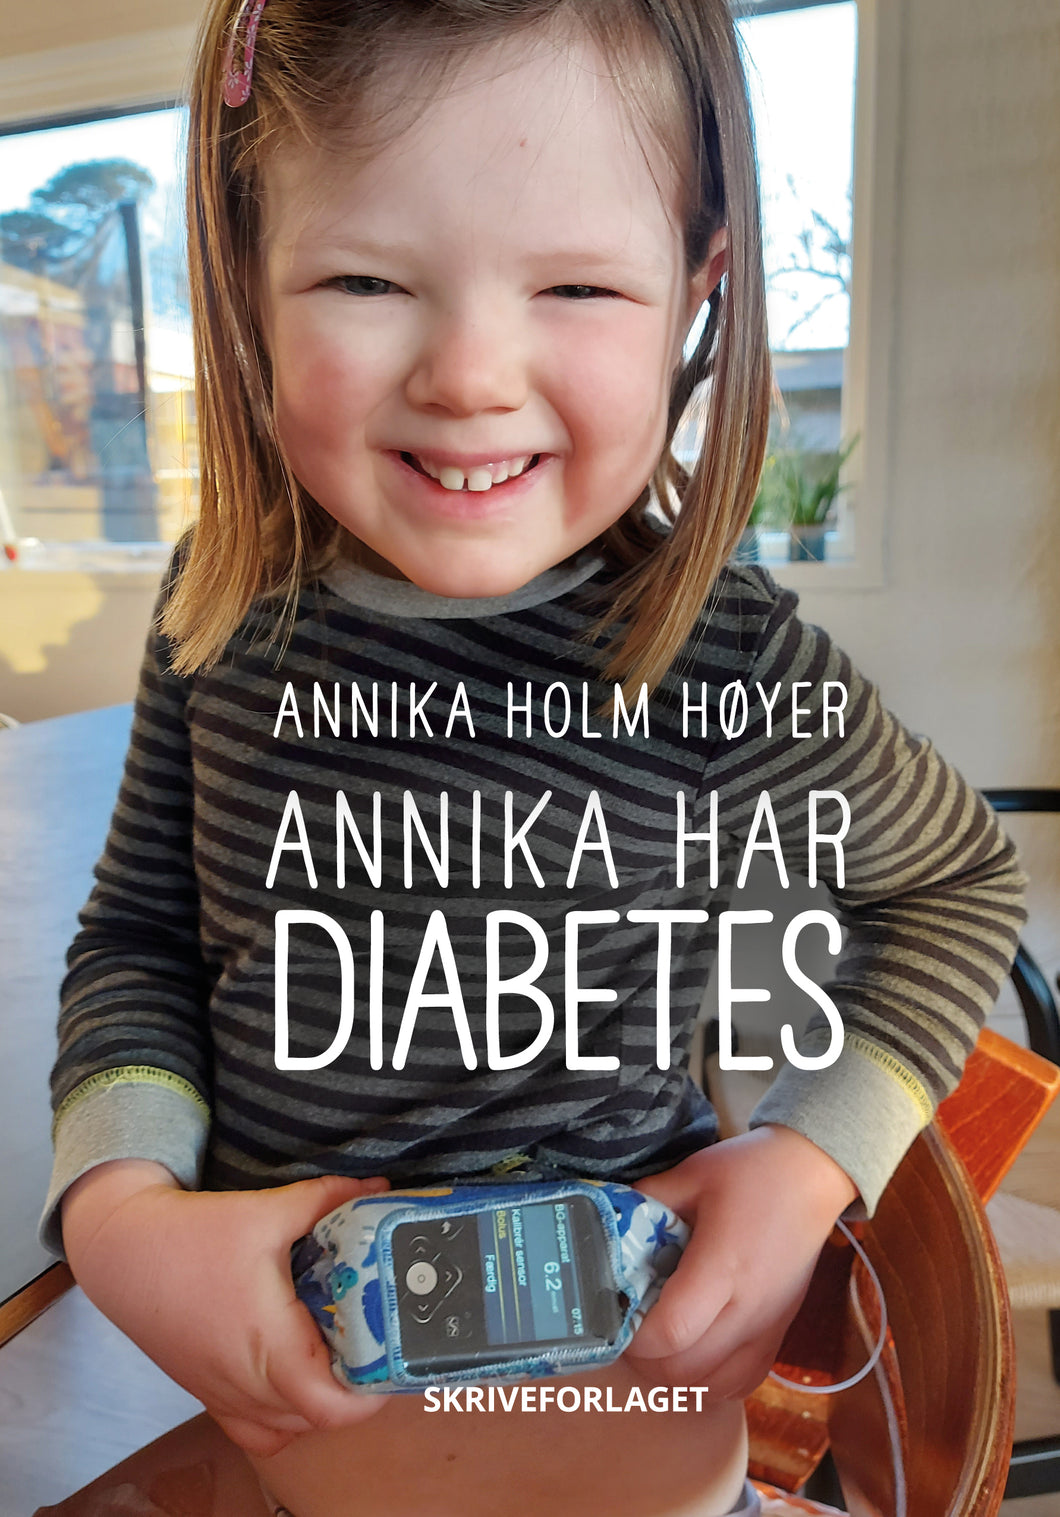 Annika har diabetes - Bog til børn om en hverdag med diabetes